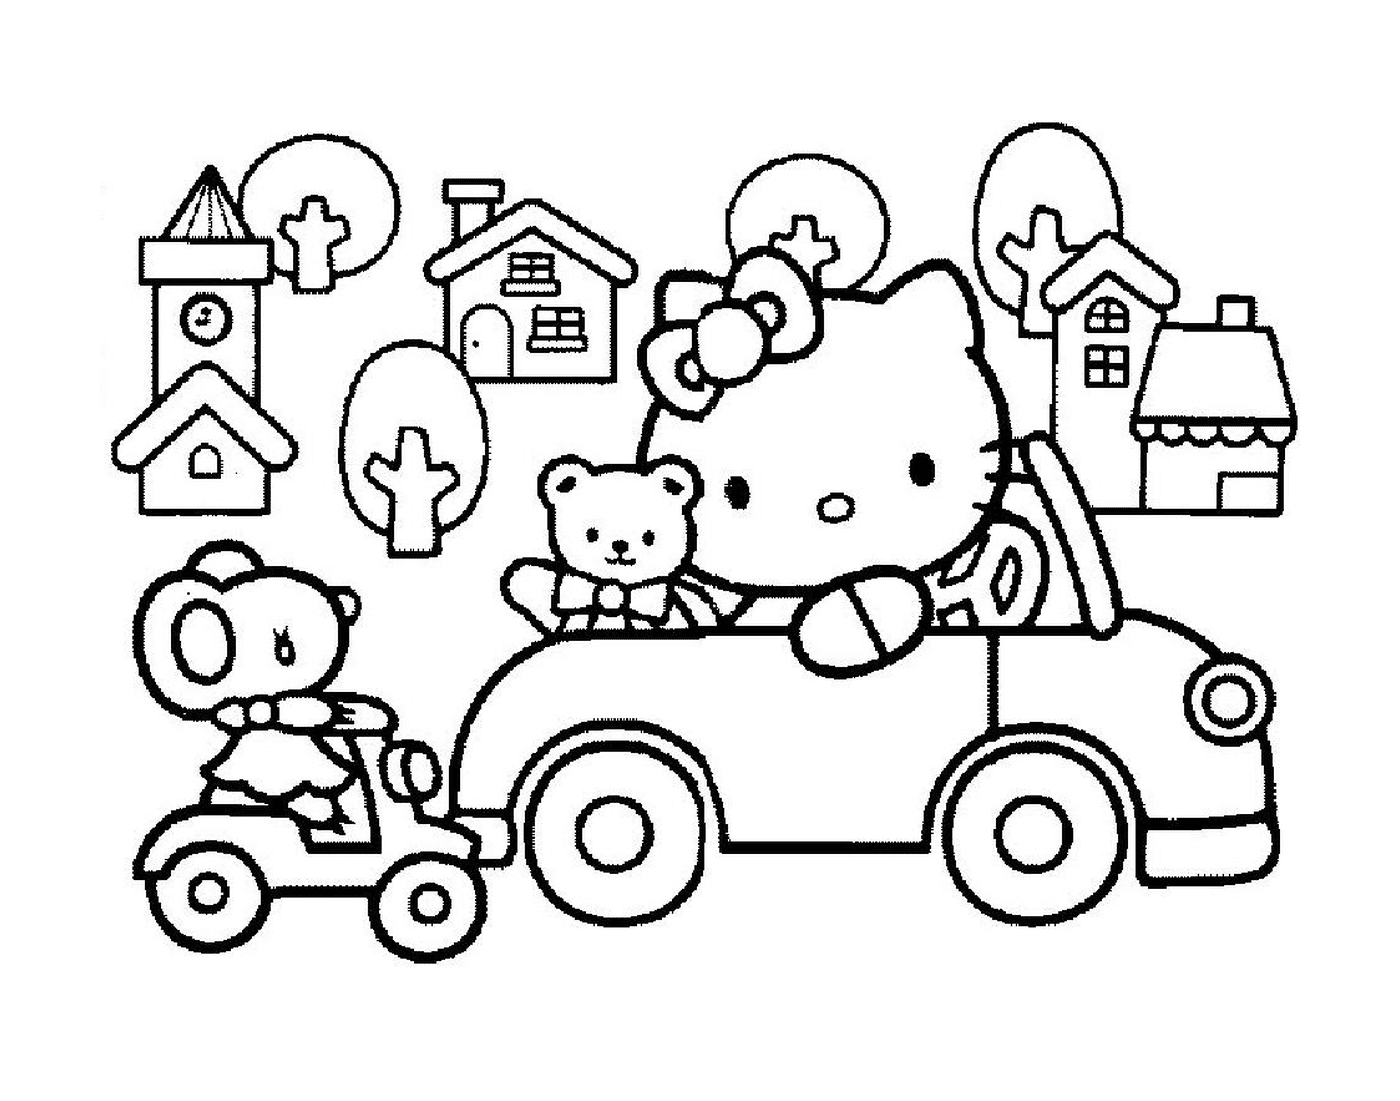  Hello Kitty dirigindo um carro com um ursinho de pelú 